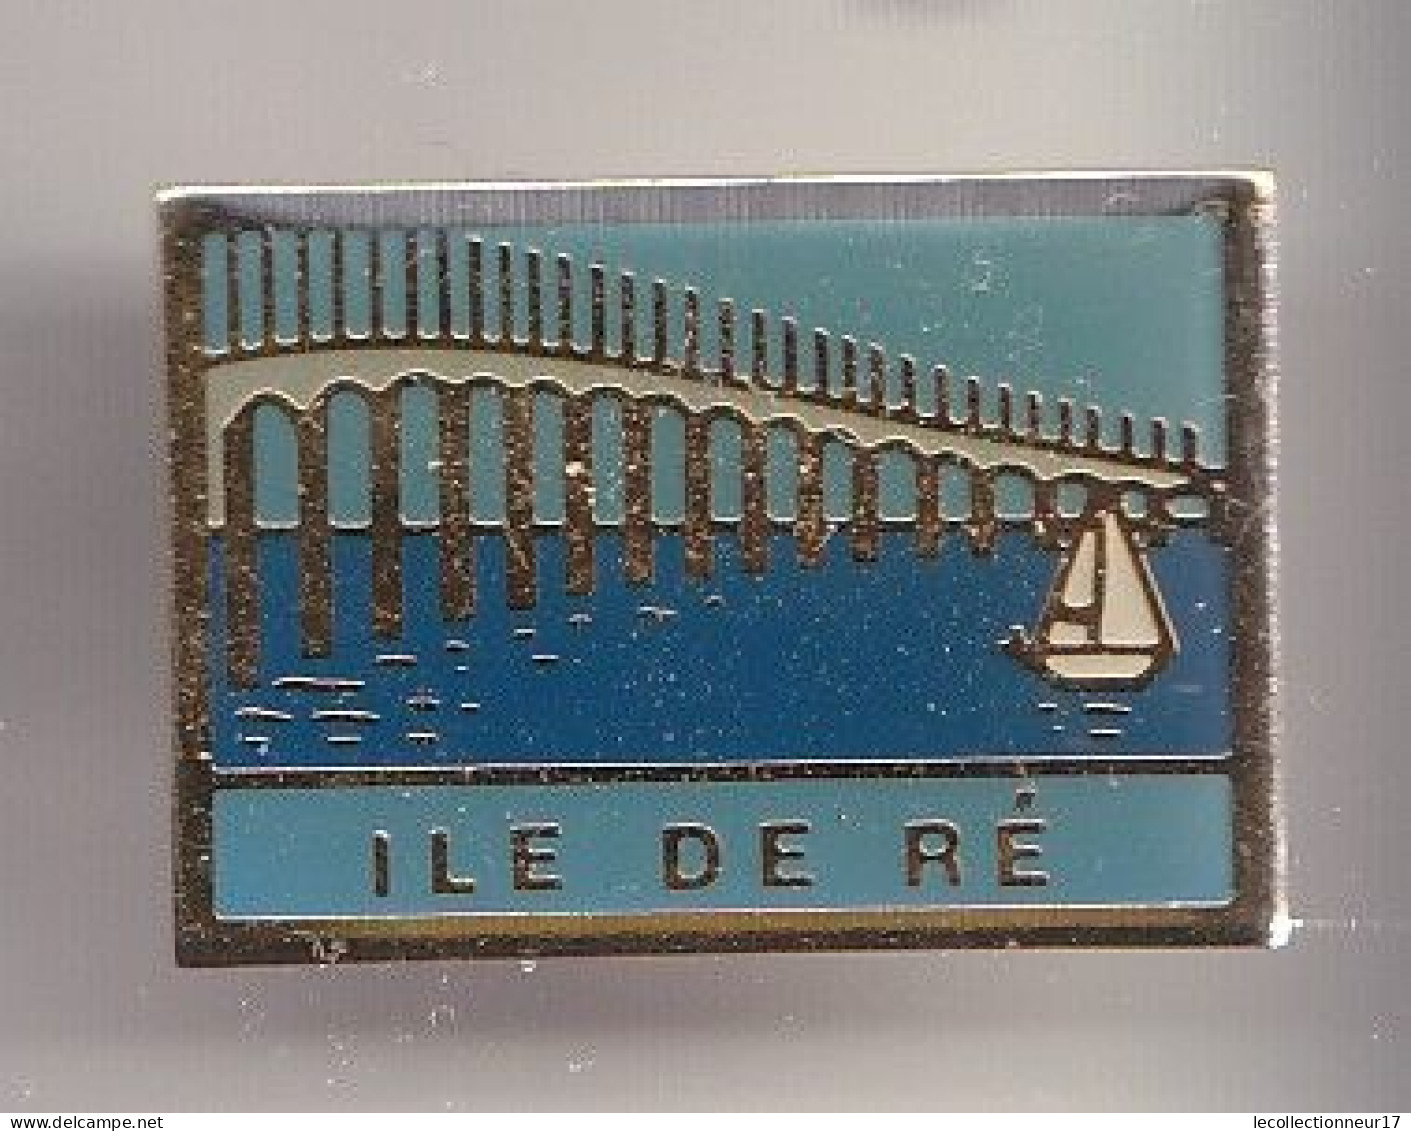 Pin's Ile De Ré En Charente Maritime Dpt 17  Réf 8328 - Ciudades